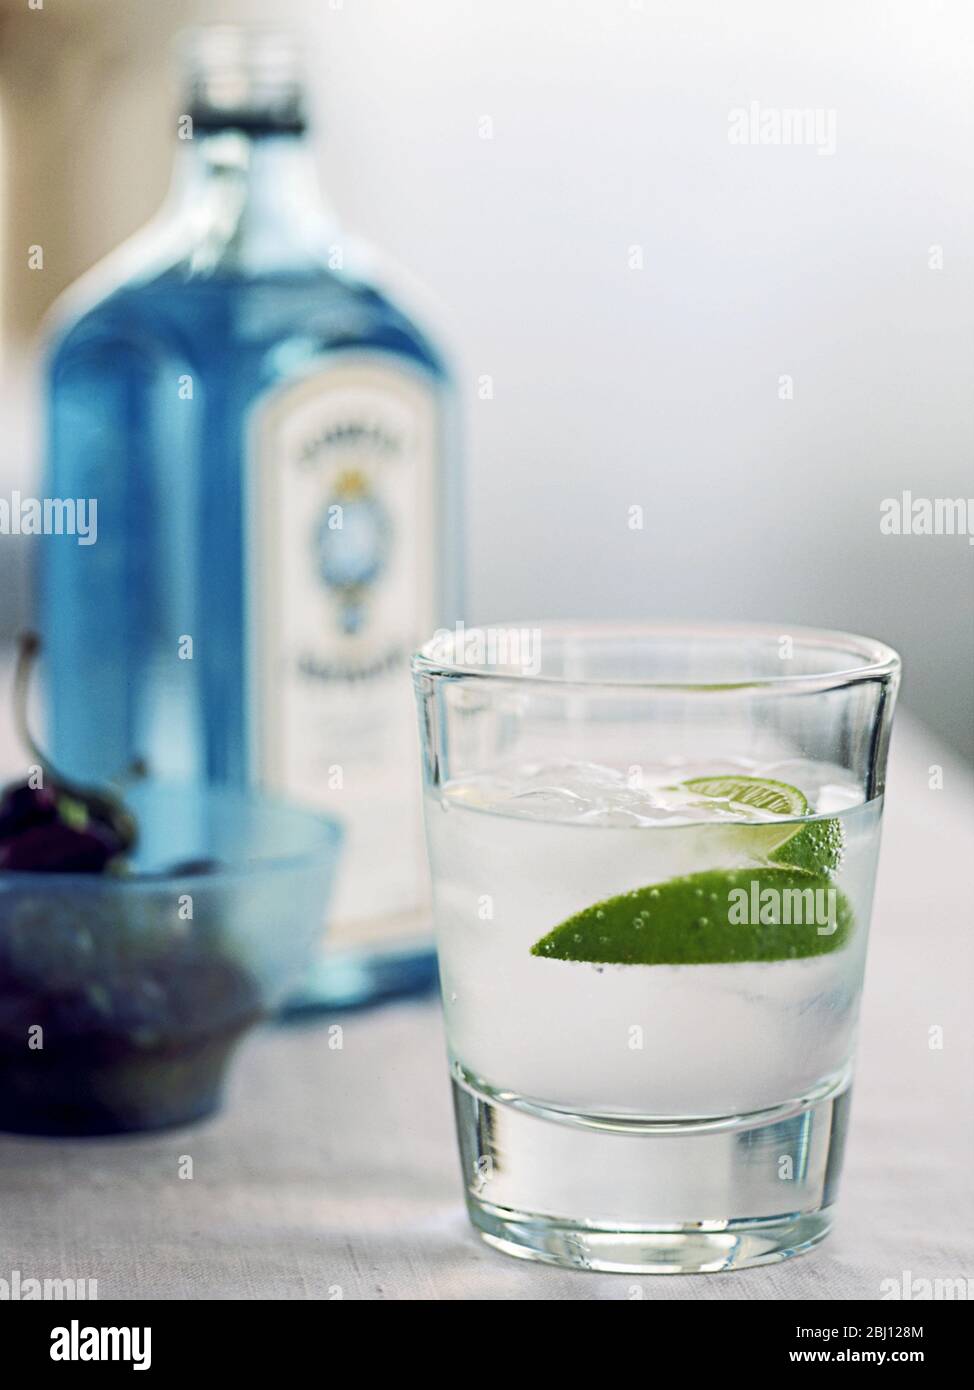 Glas Gin Tonic mit Limettensegment und Flasche Bombay Sapphire im Hintergrund - Stockfoto